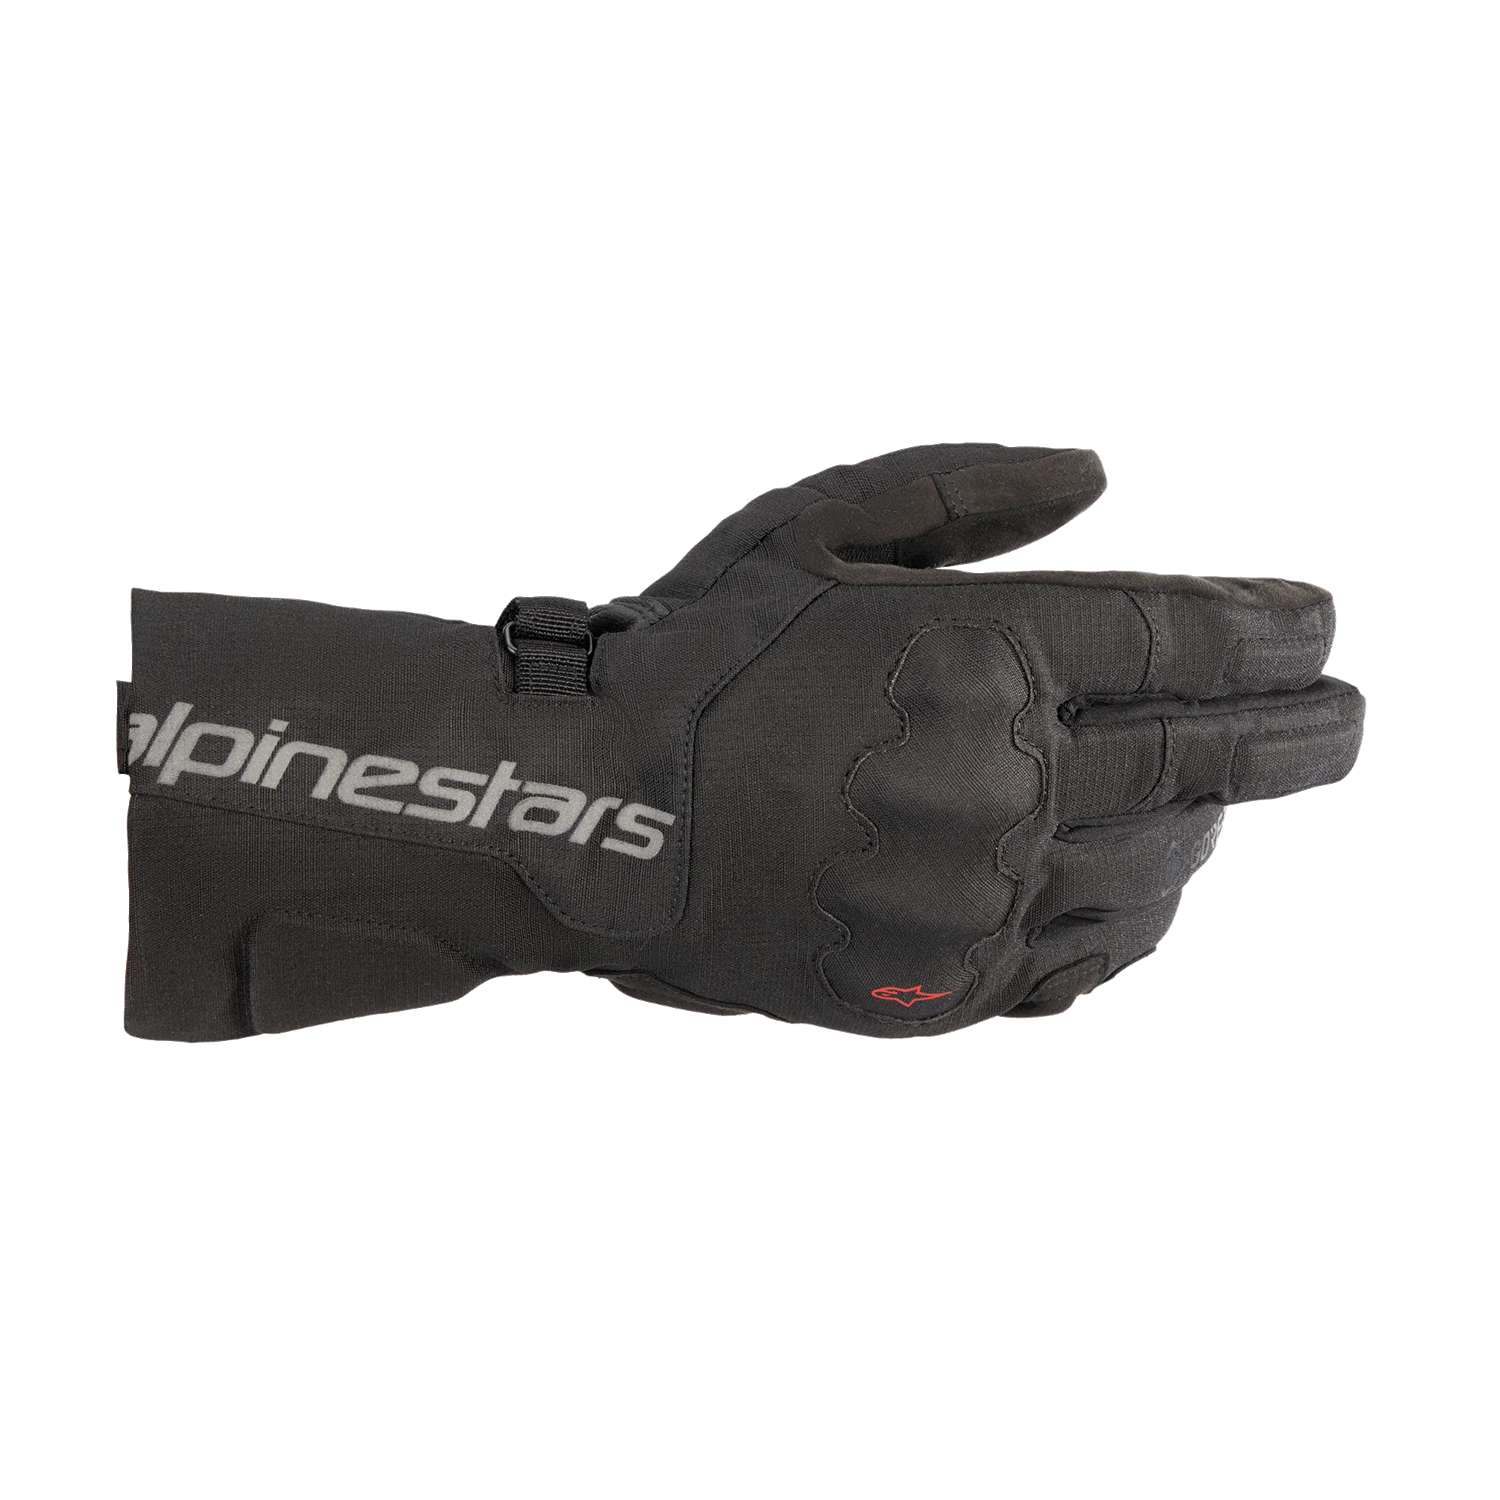 Image of Alpinestars Wr-X Gore-Tex Gloves Black Größe M